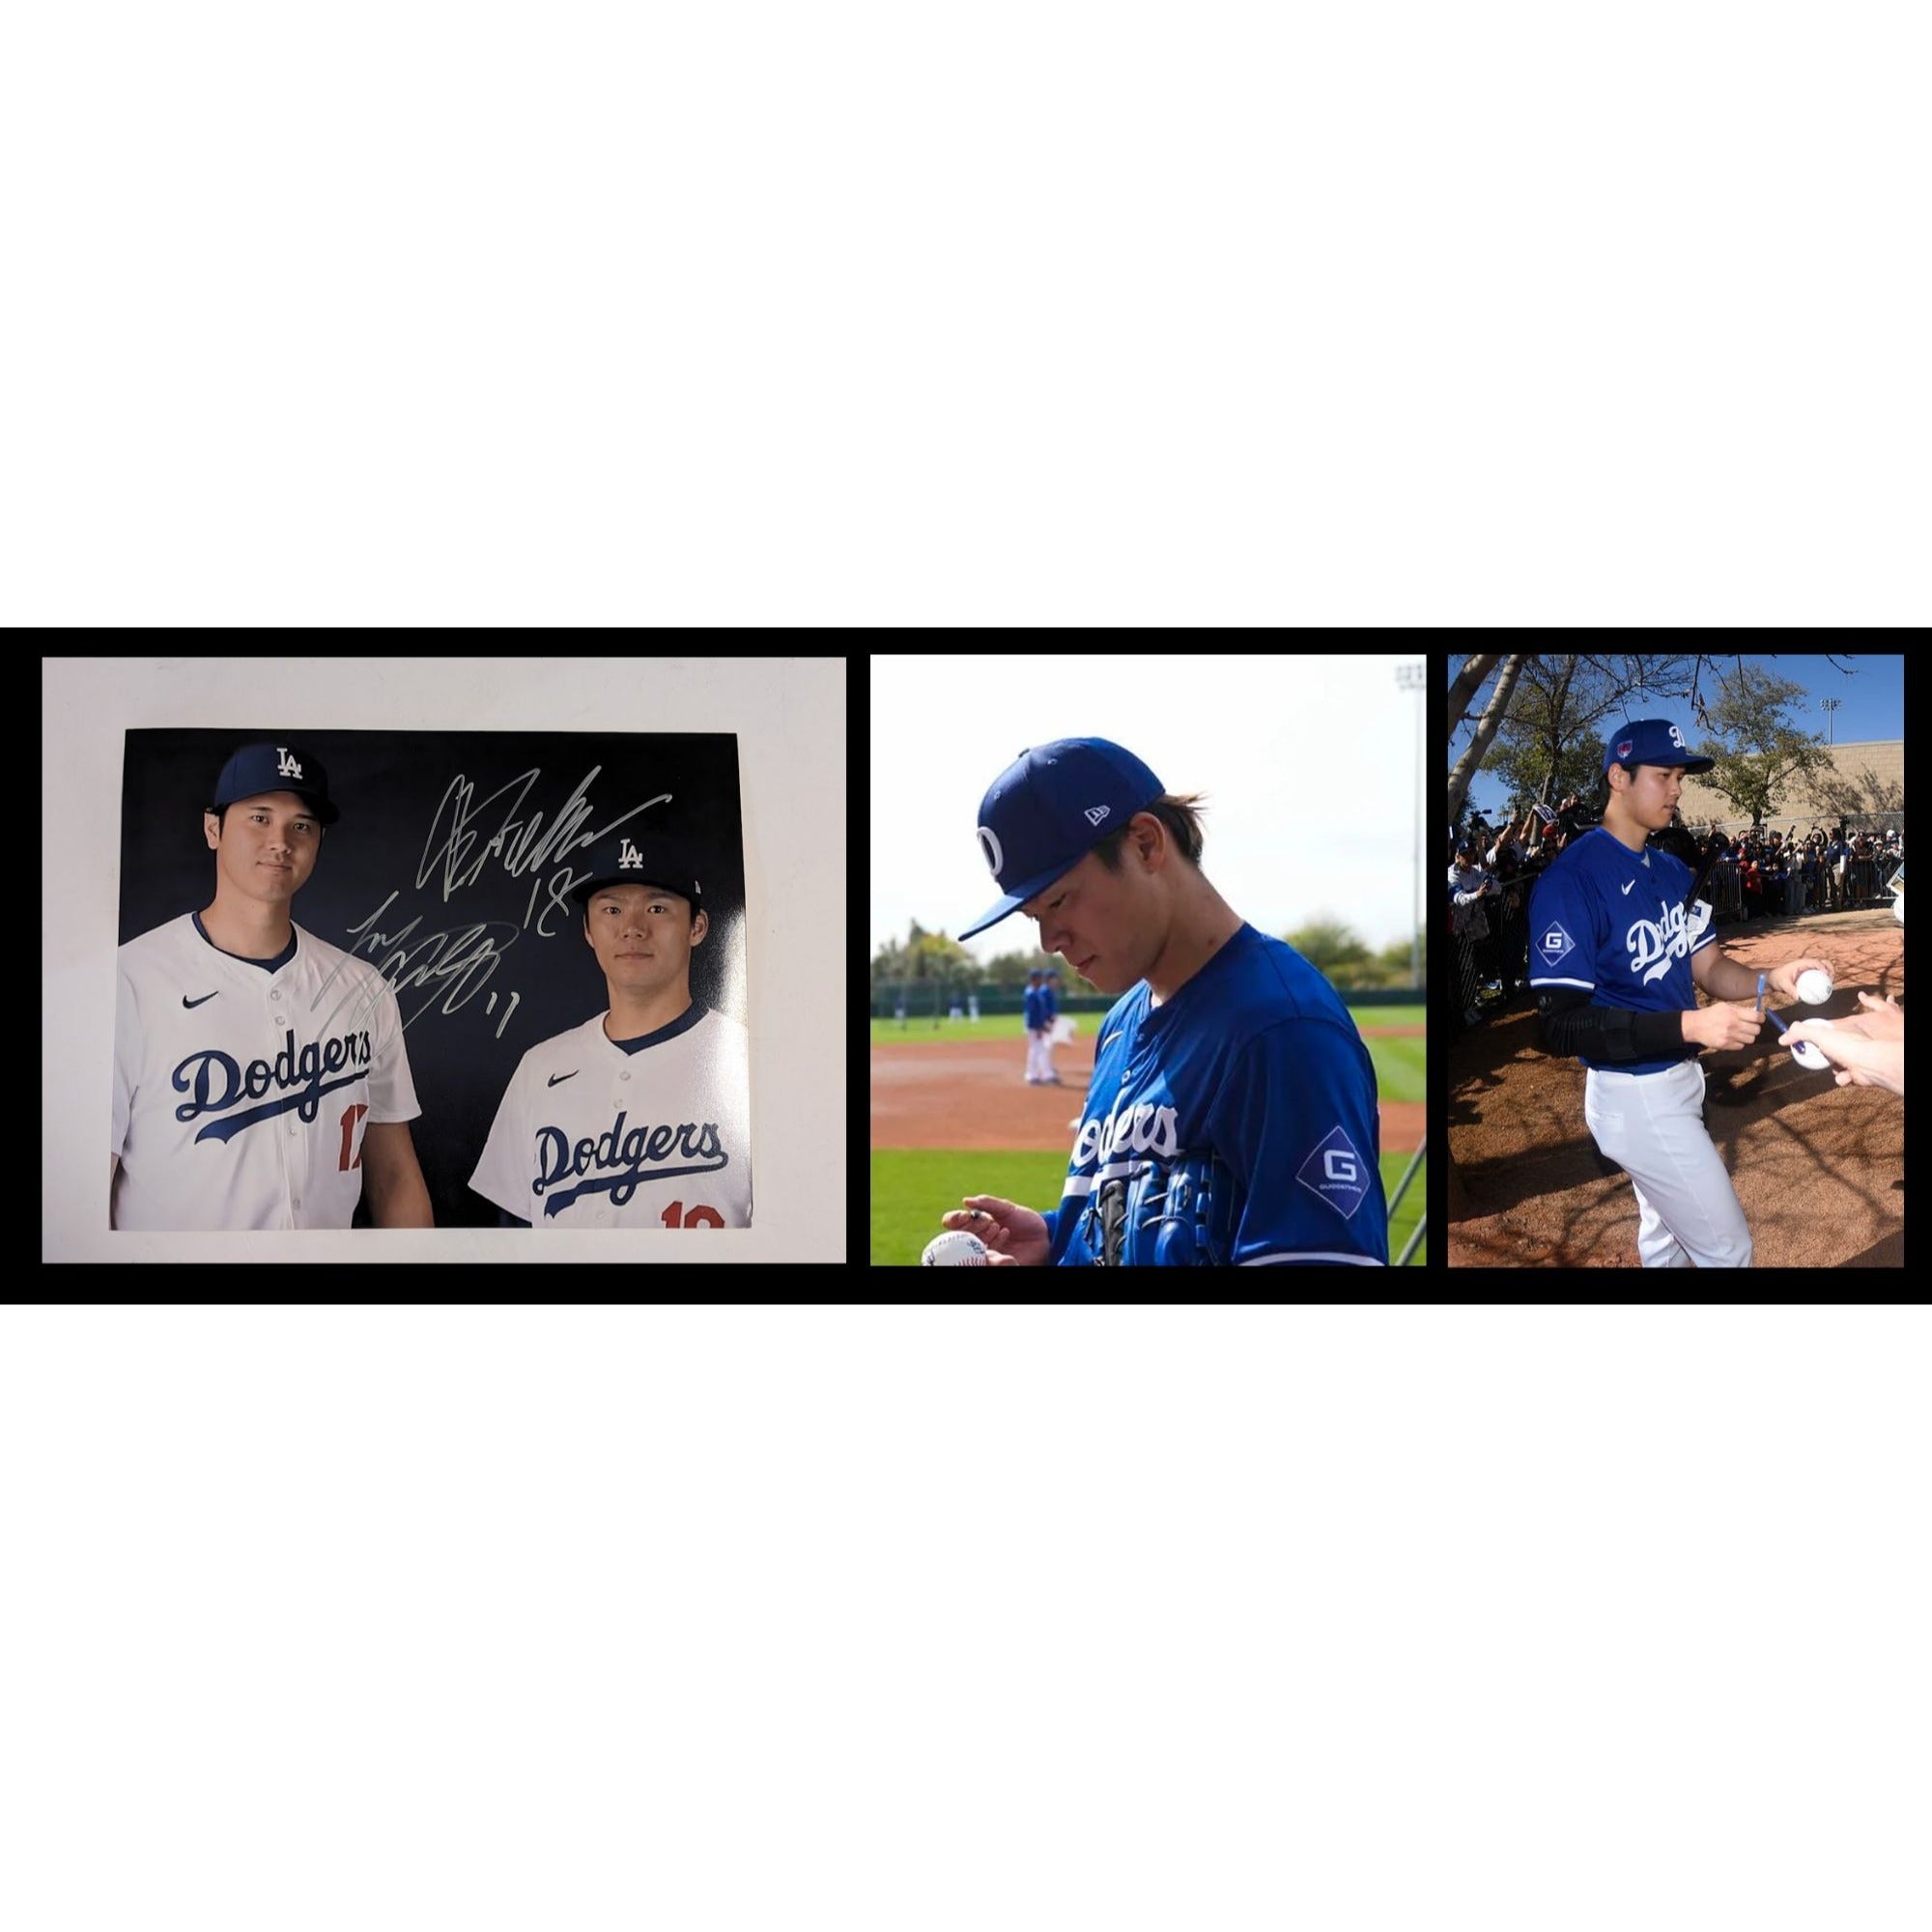 Shohei Ohtani & Yoshinobu Yamamoto Los Angeles Dodgers 8x10 photo signed with proof